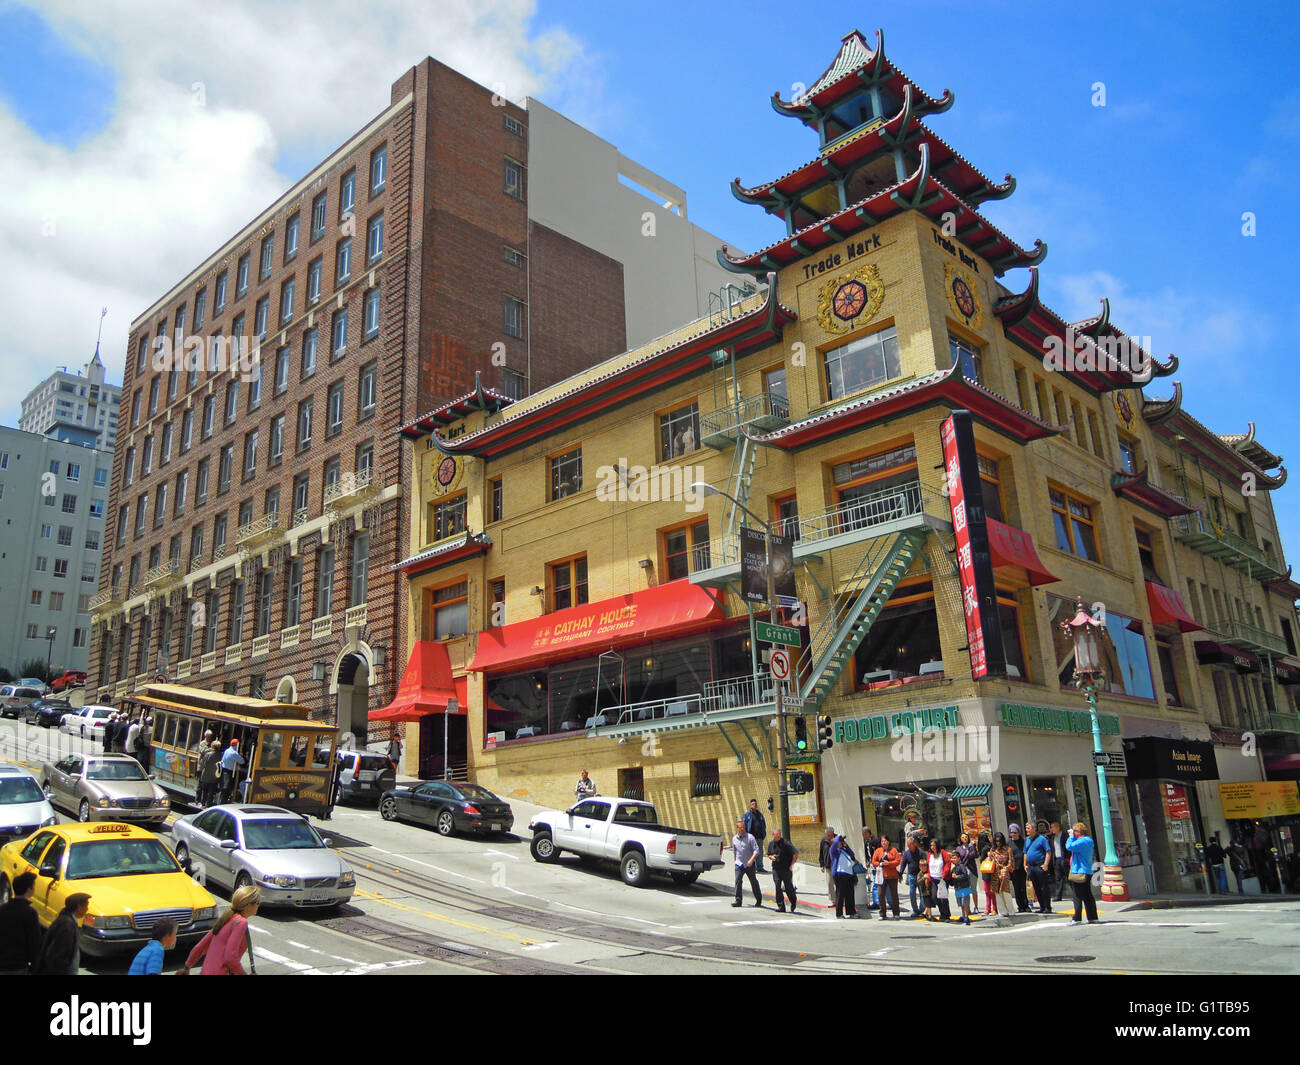 San Francisco: con el horizonte de edificios orientales de Chinatown, el barrio chino más antiguo de América del Norte y la comunidad china más grande fuera de Asia Foto de stock